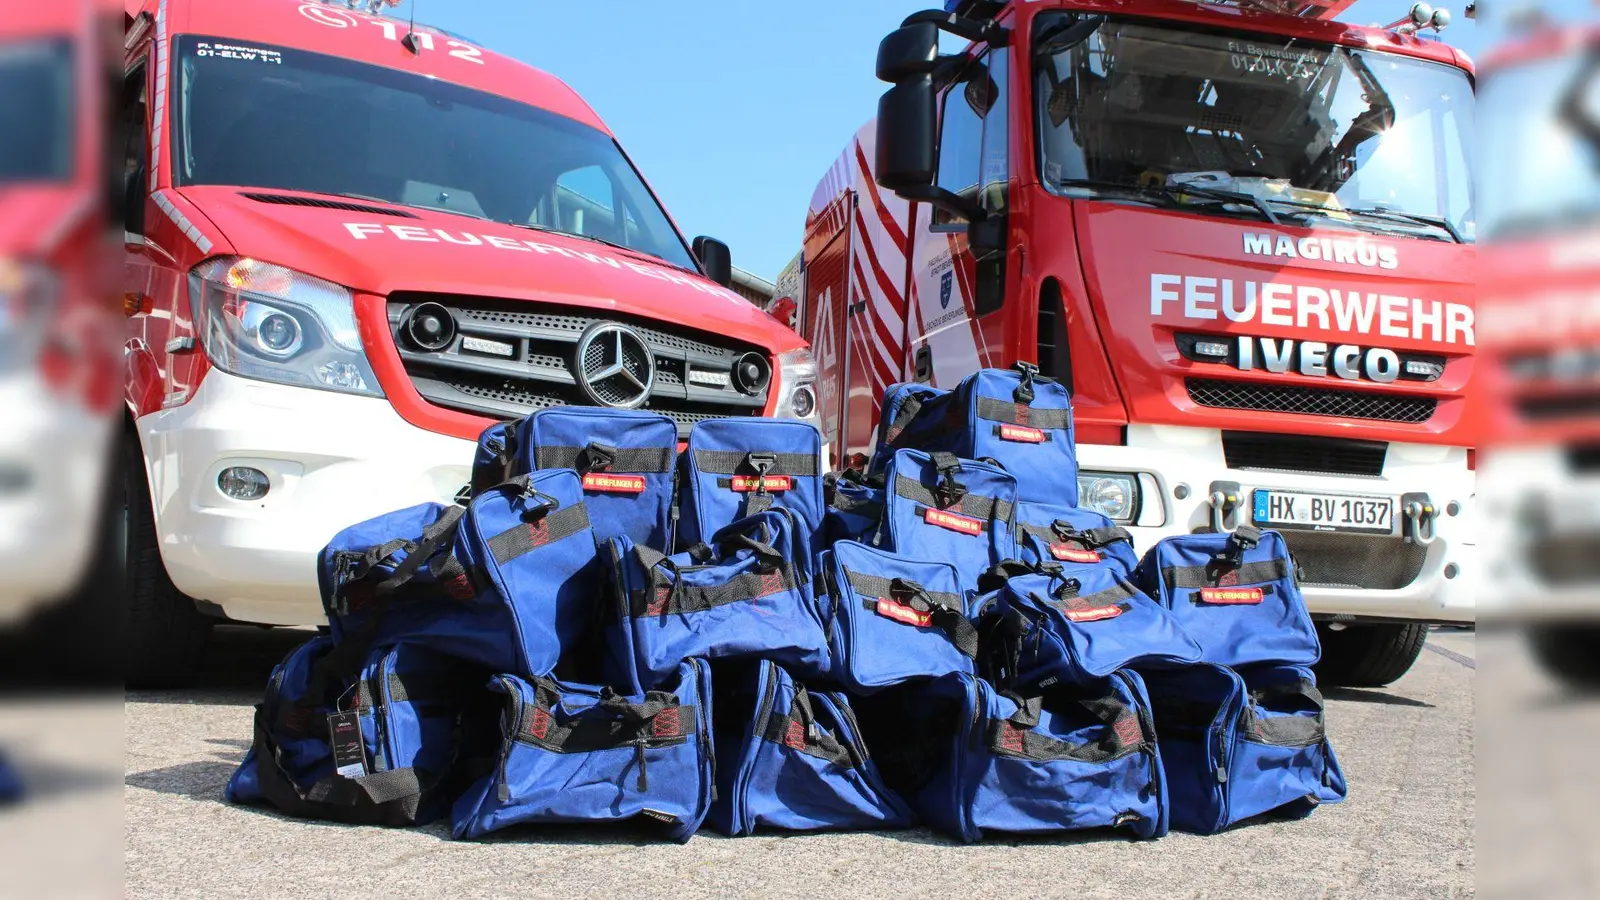 Die durch Spenden finanzierten Taschen tragen zur Gesundheitsvorsorge der Feuerwehrleute bei.  (Foto: privat)